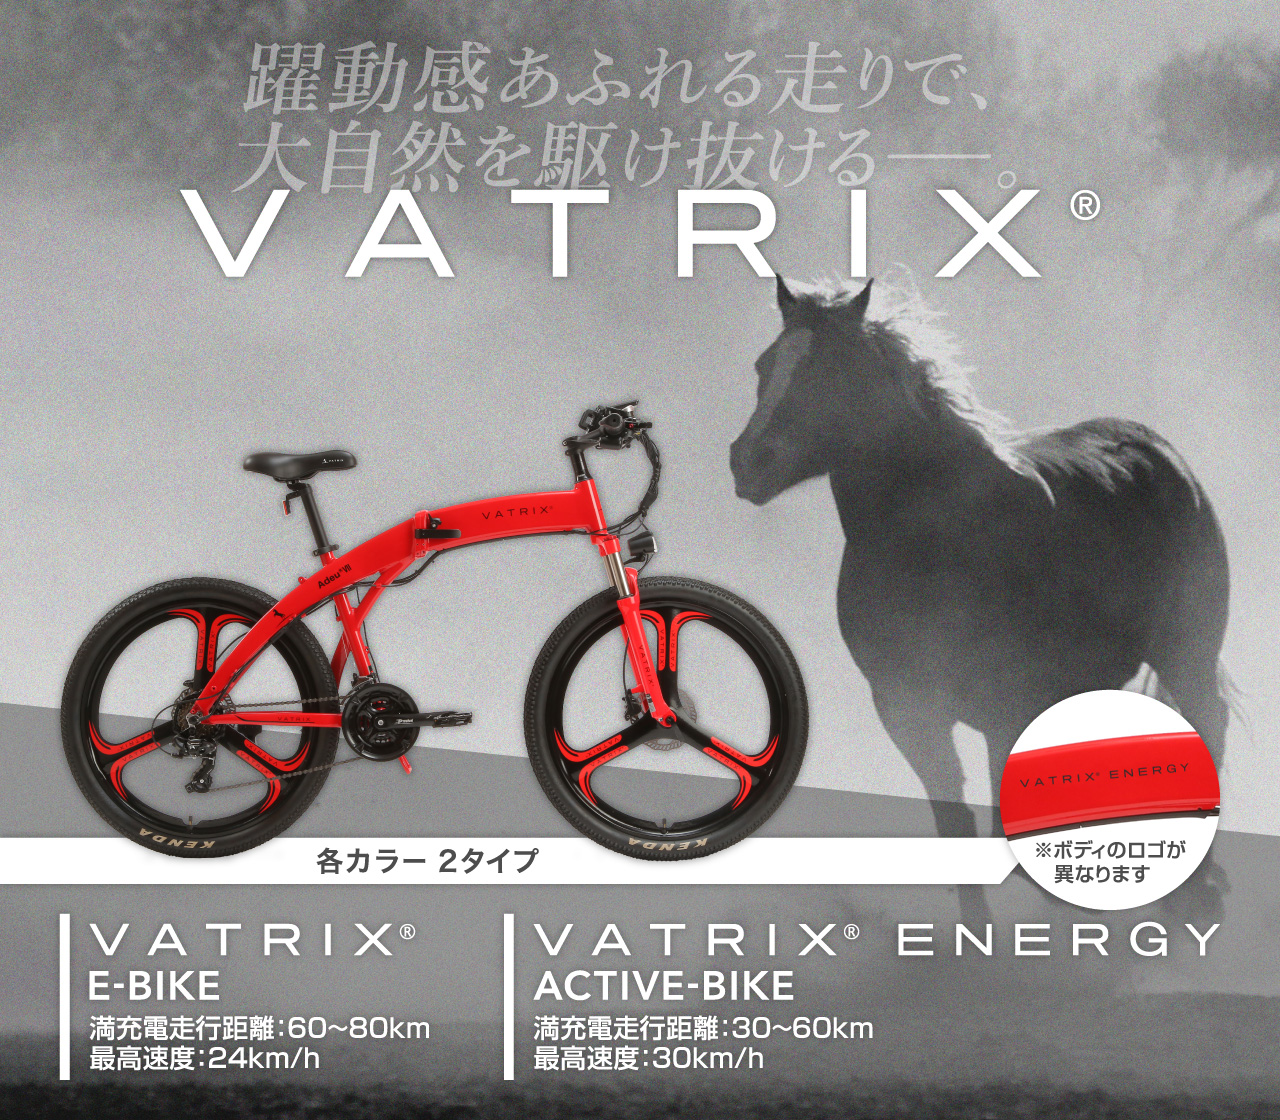 躍動感あふれる走りで、大自然を駆け抜ける。VATRIX